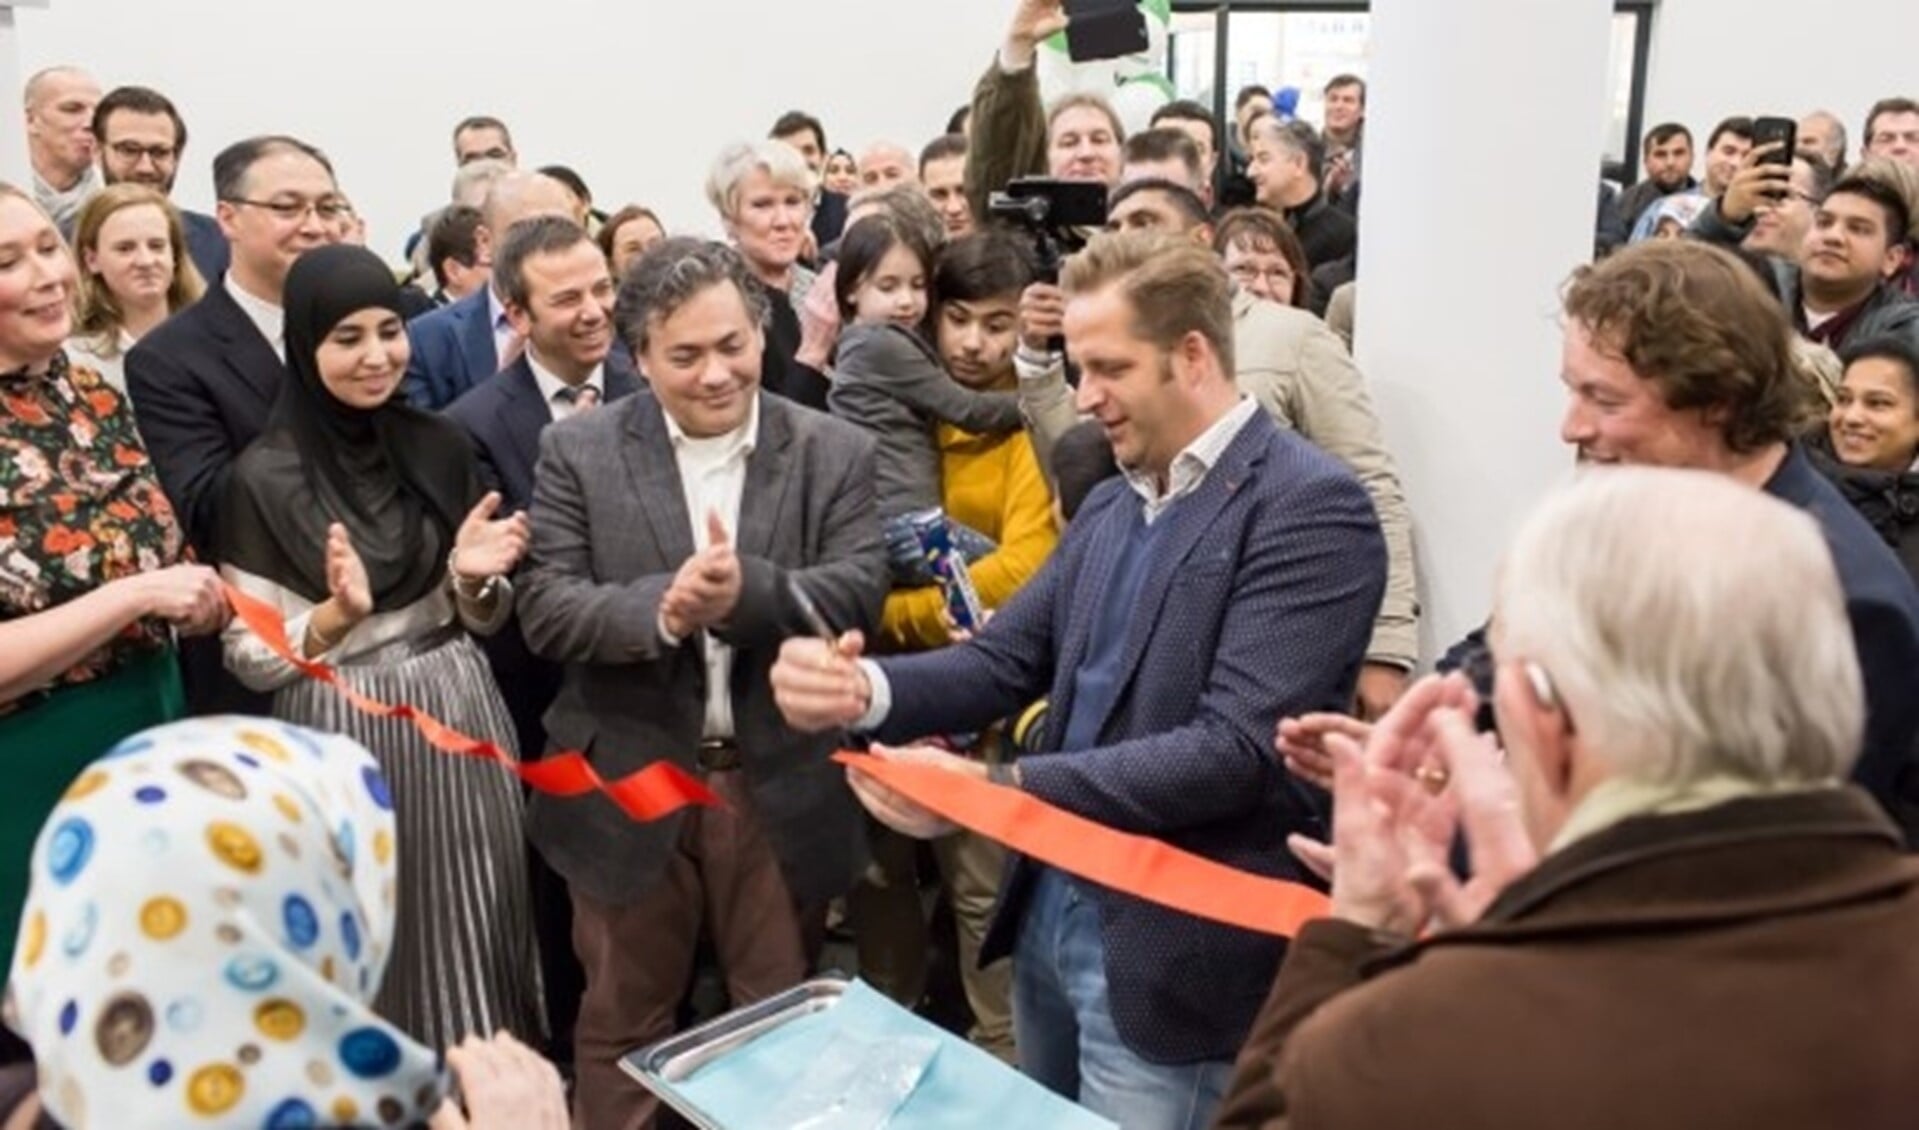 Het nieuwe gezondheidscentrum werd officieel geopend door wethouder Hugo de Jonge.